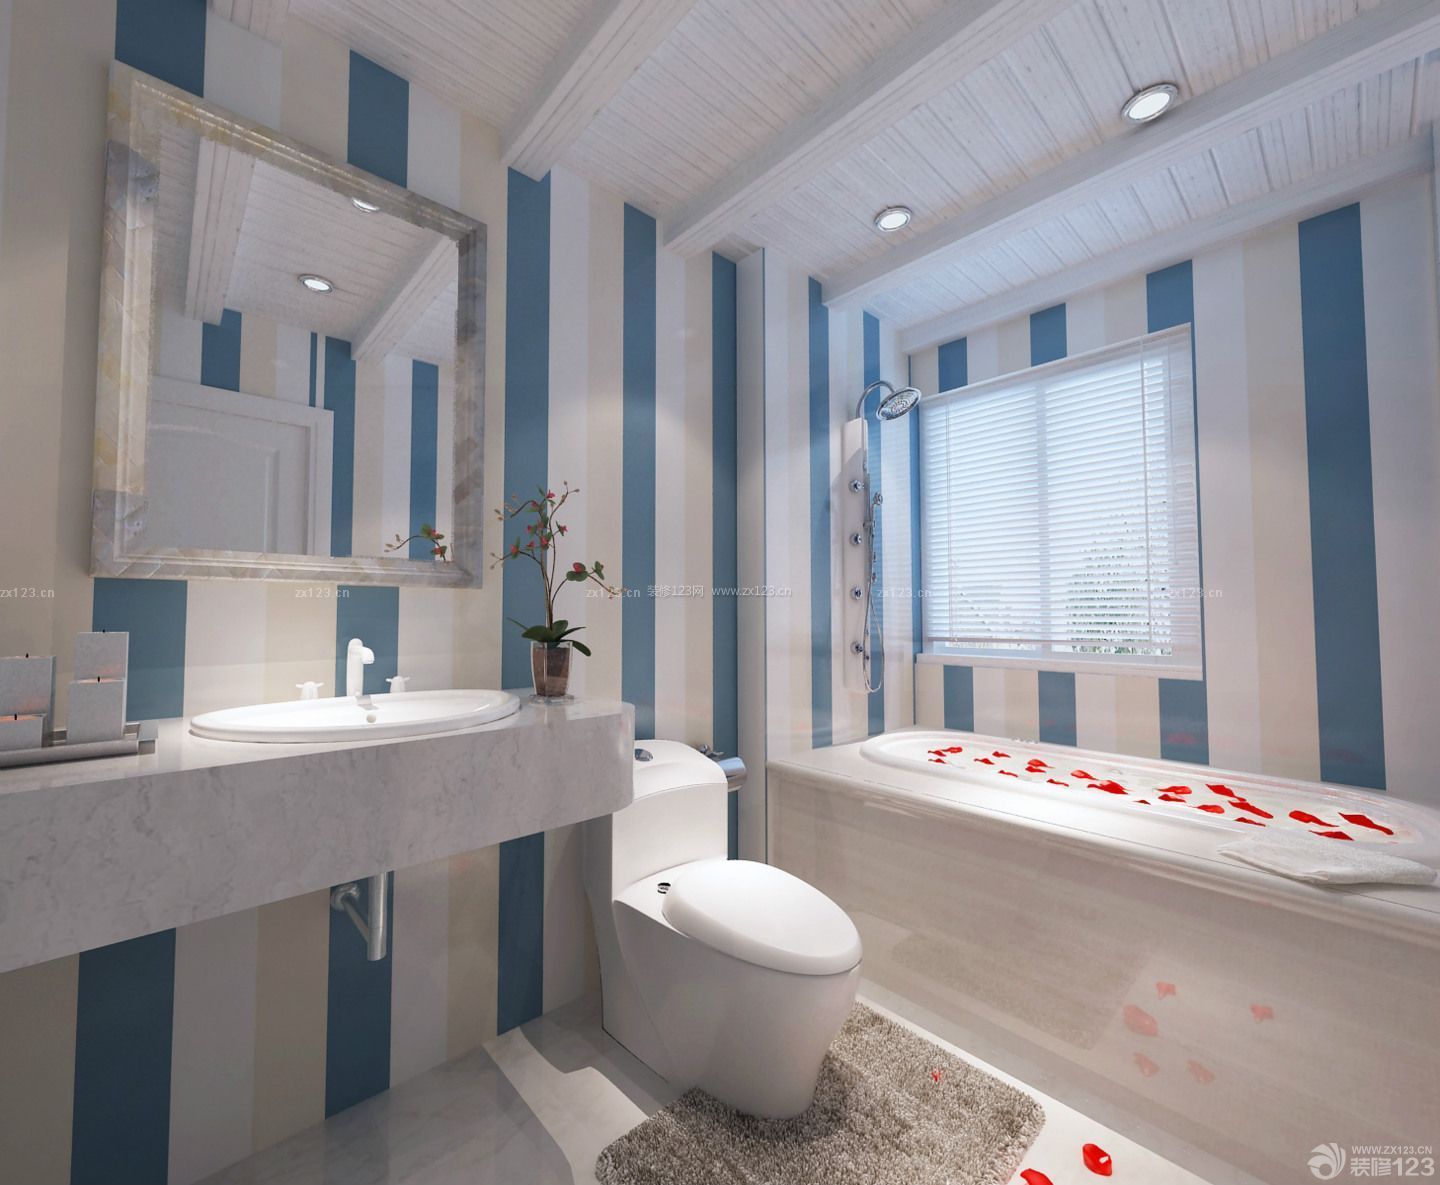 2014浴室装修效果图 木质吊顶 卷帘 